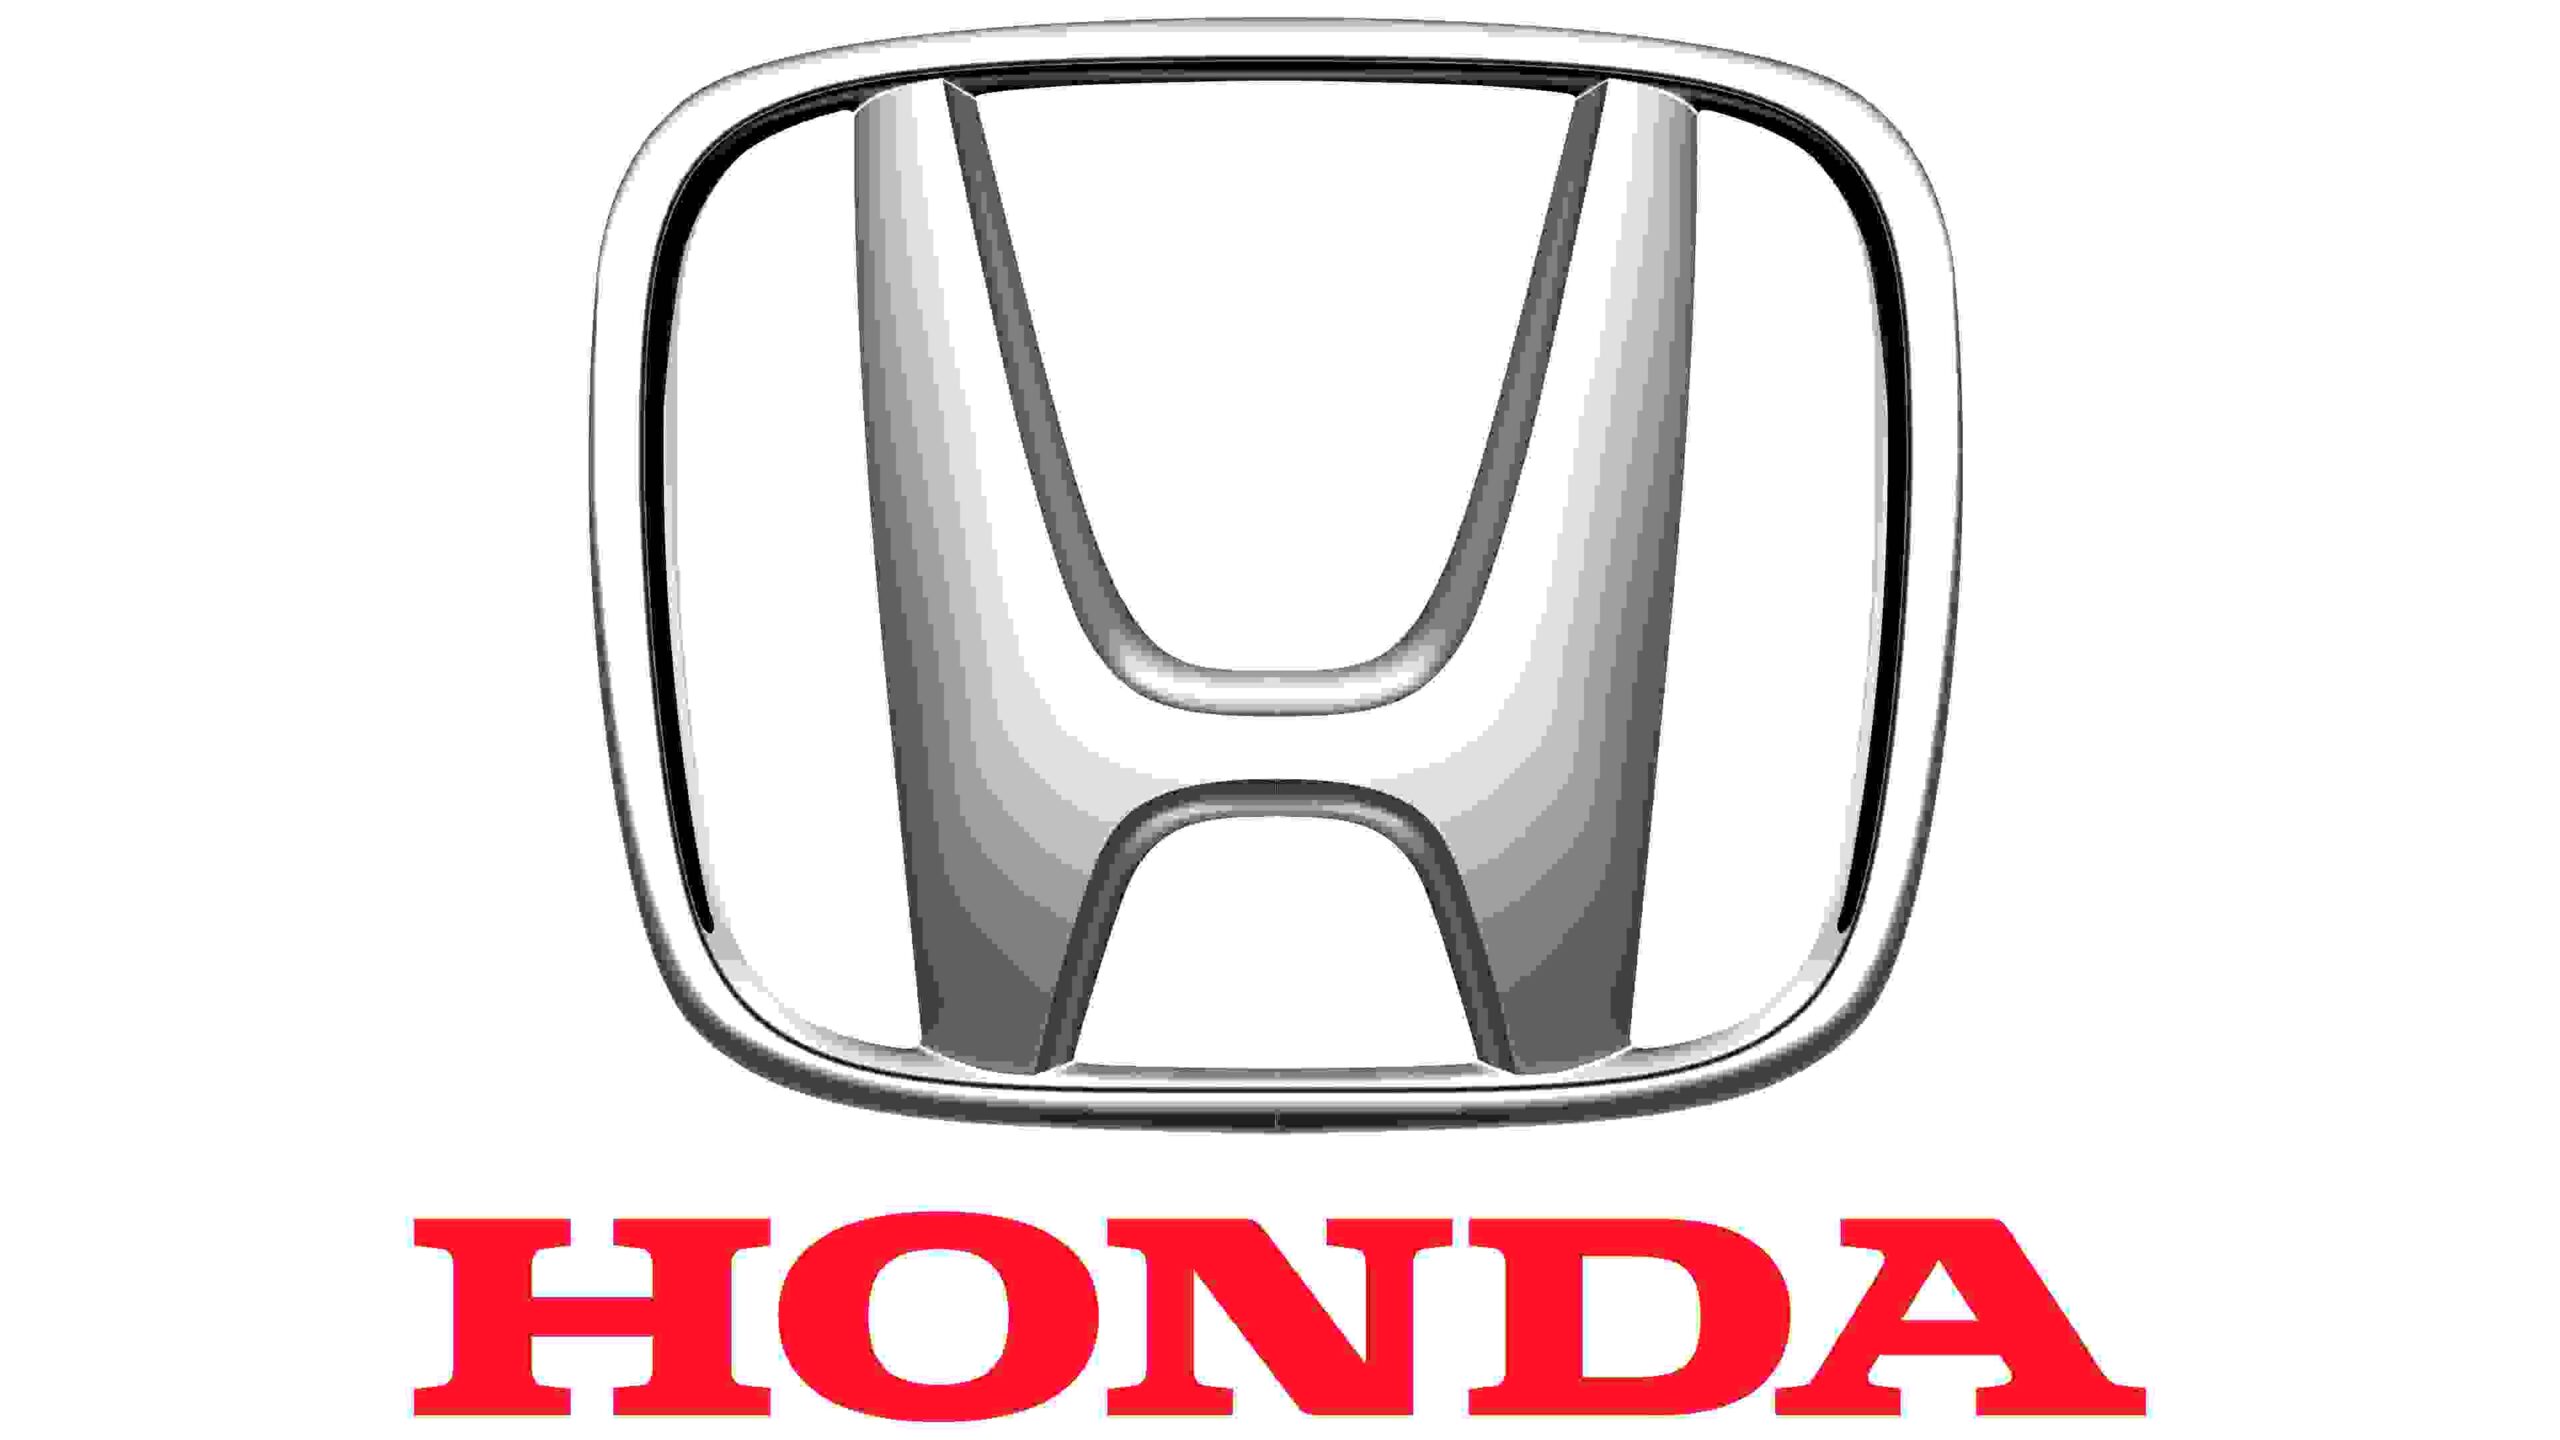 Servicio de alquiler de coche Honda con conductor